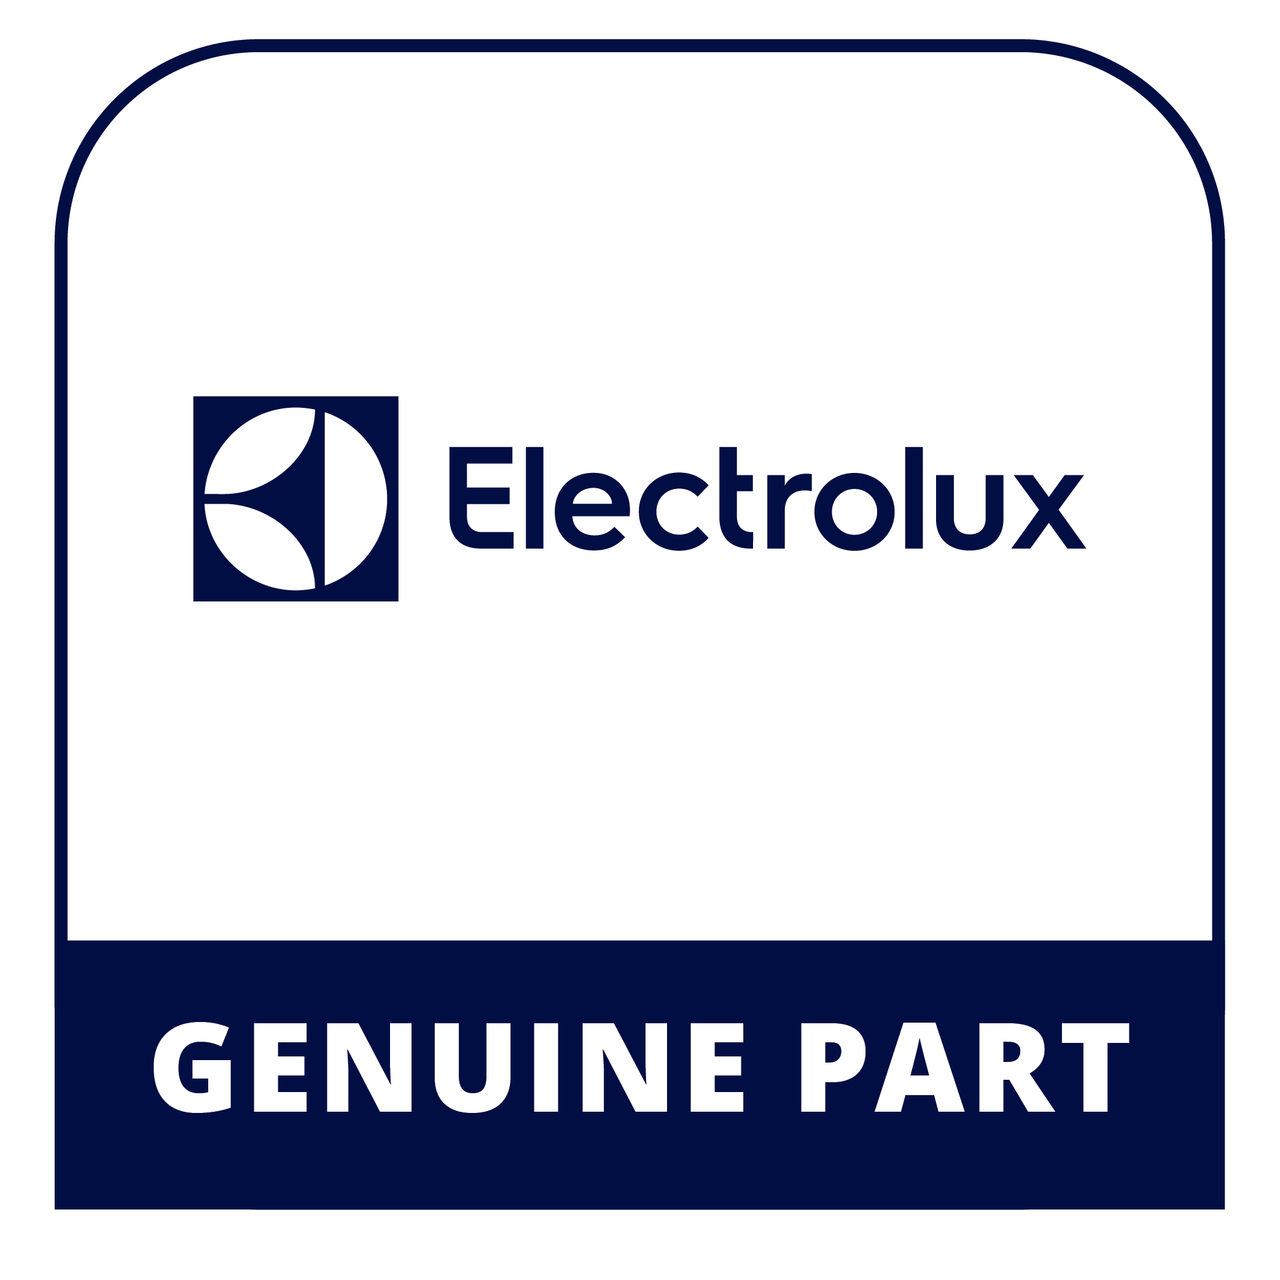 Frigidaire - Electrolux 216822900 - Switch - Genuine Electrolux Part